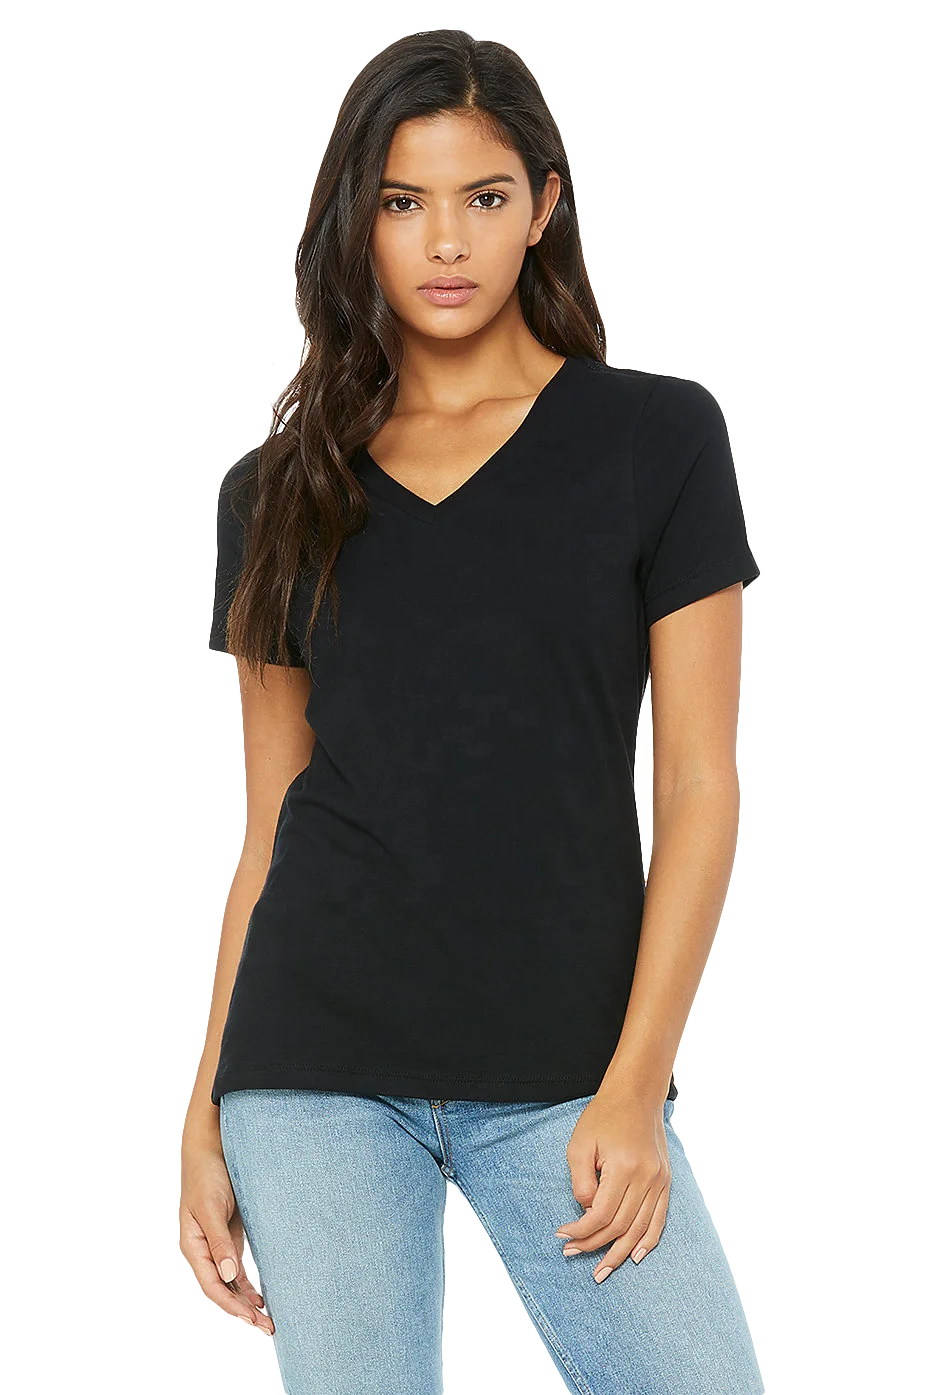 Оптовая продажа, простые растягивающиеся рубашки с v-образным вырезом, 100% хлопковая футболка на заказ с большим логотипом для женщин, Топ для женщин